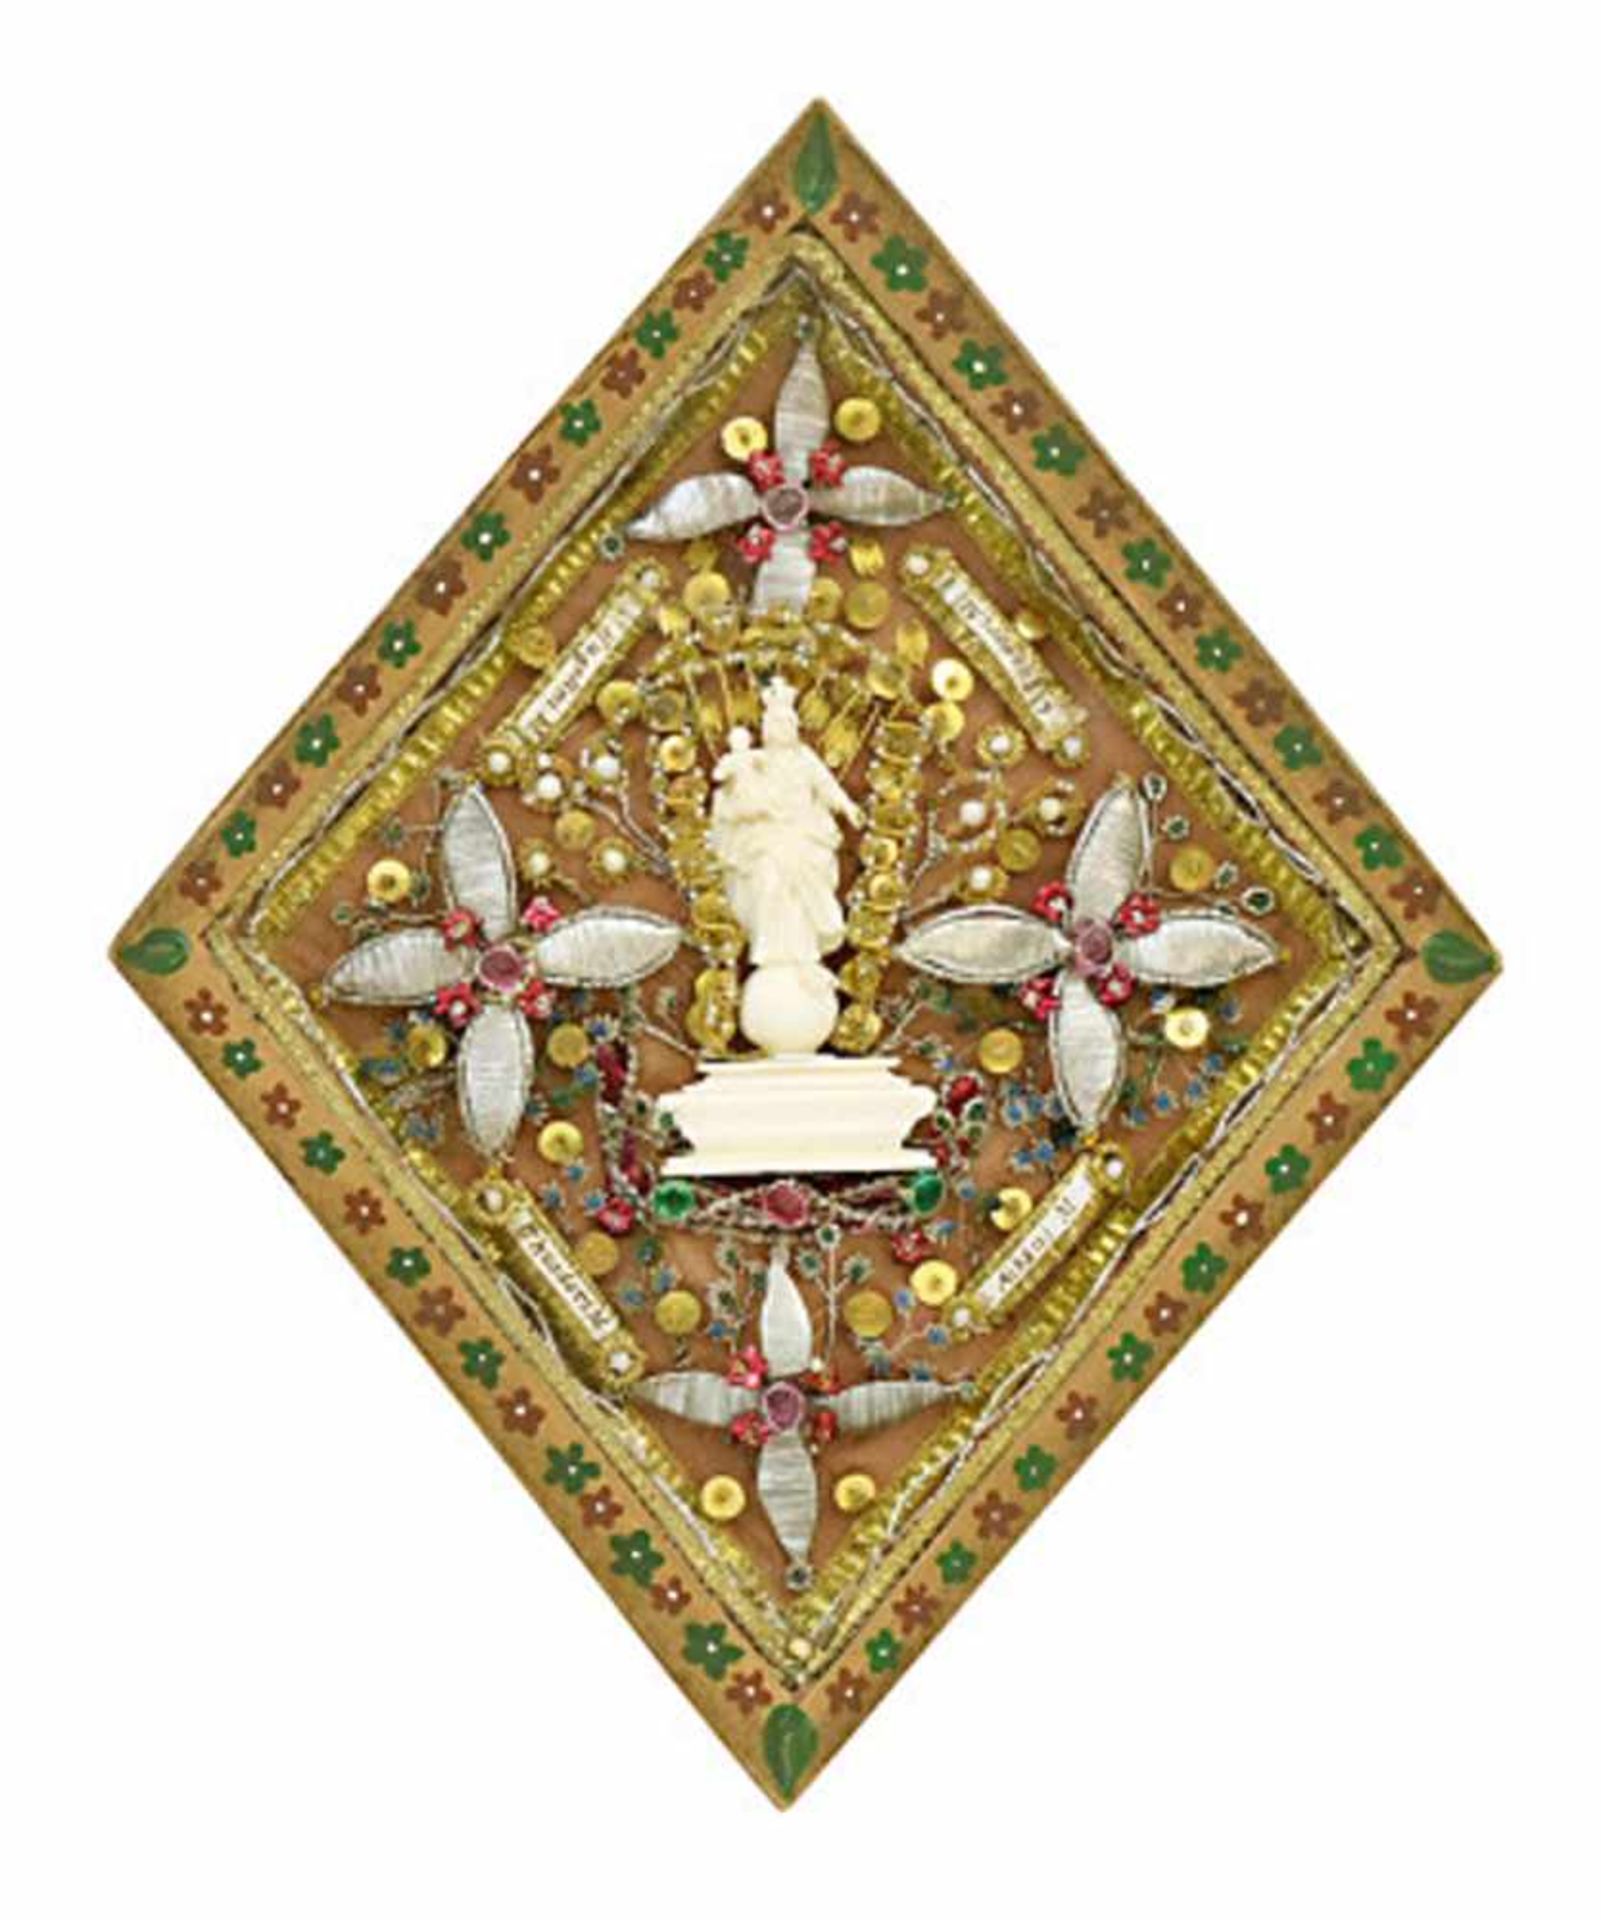 Klosterarbeit20. Jh.Elfenbein imitierende Darstellung der Immaculata, umgeben von Reliquienpartikeln